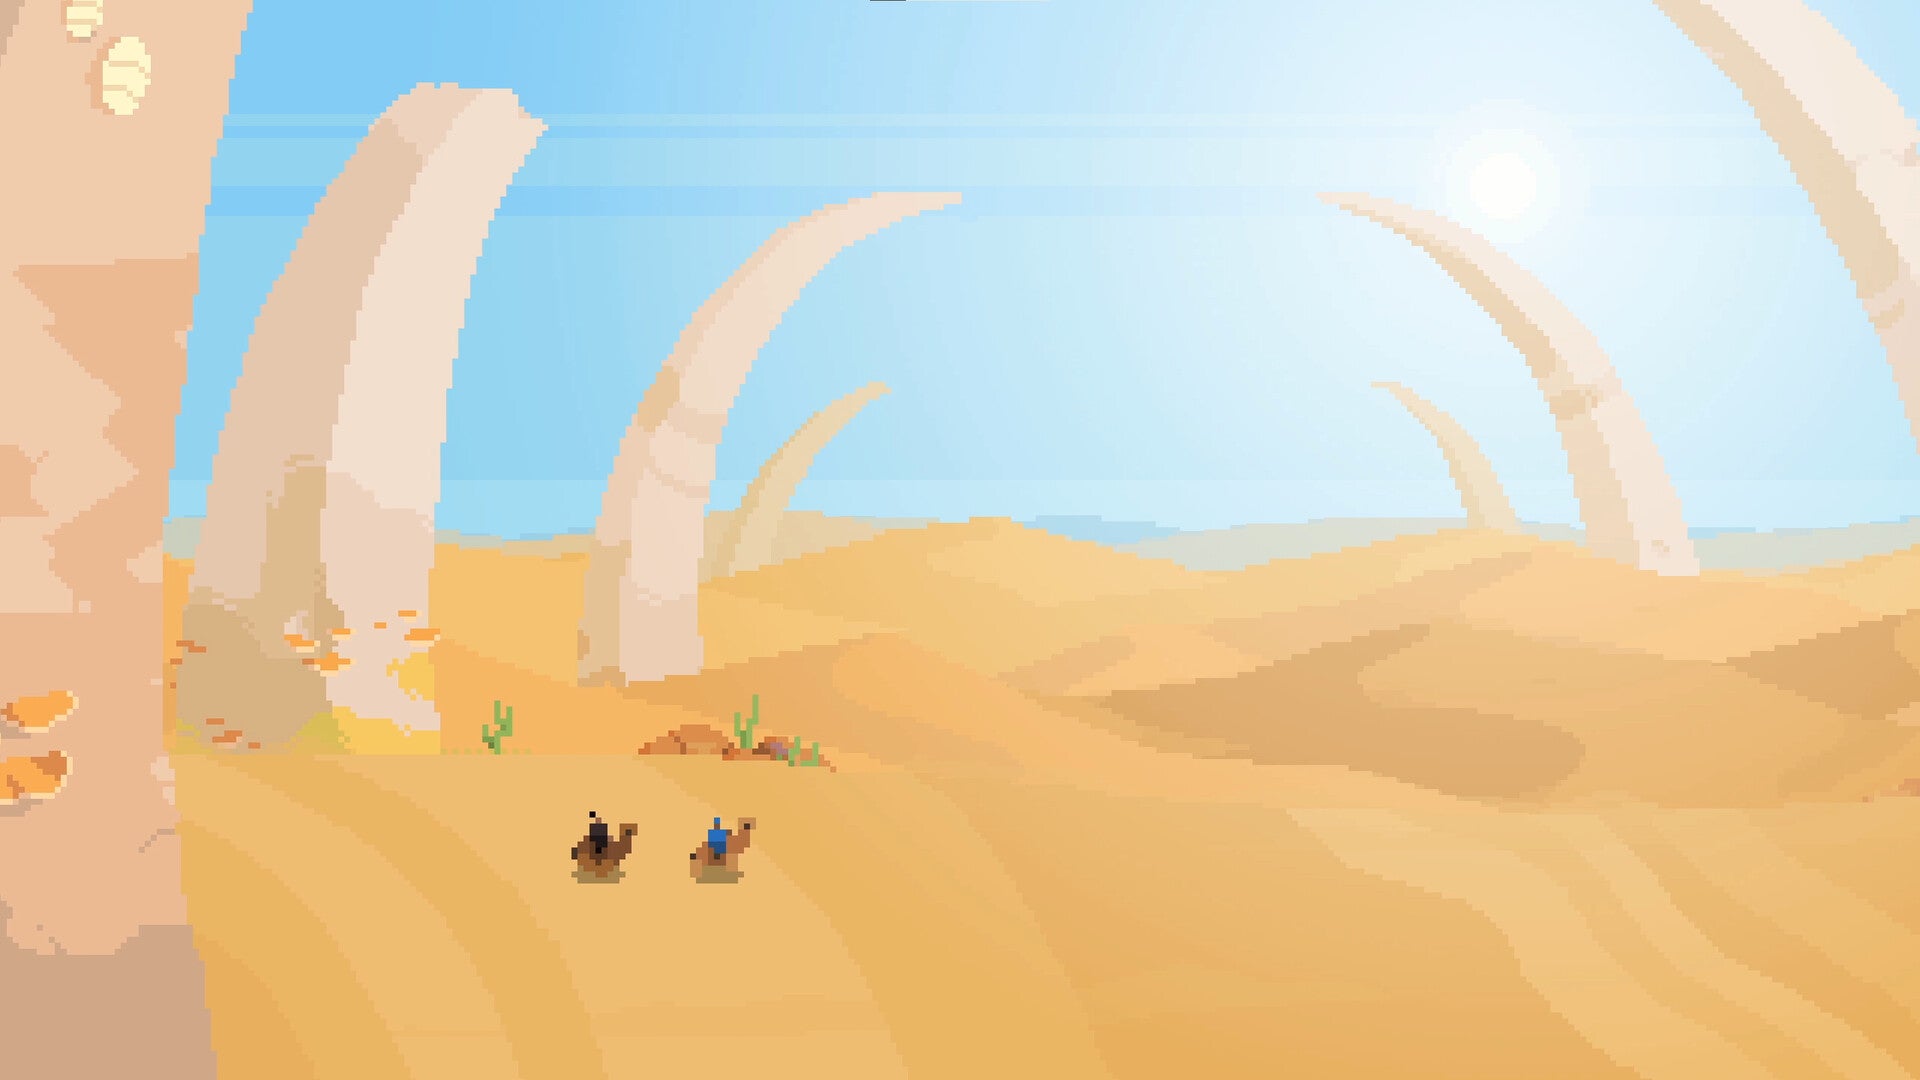 Deux petits cavaliers de chameaux pixelisés traversent un désert ébloui par le soleil, entouré d'énormes ossements.